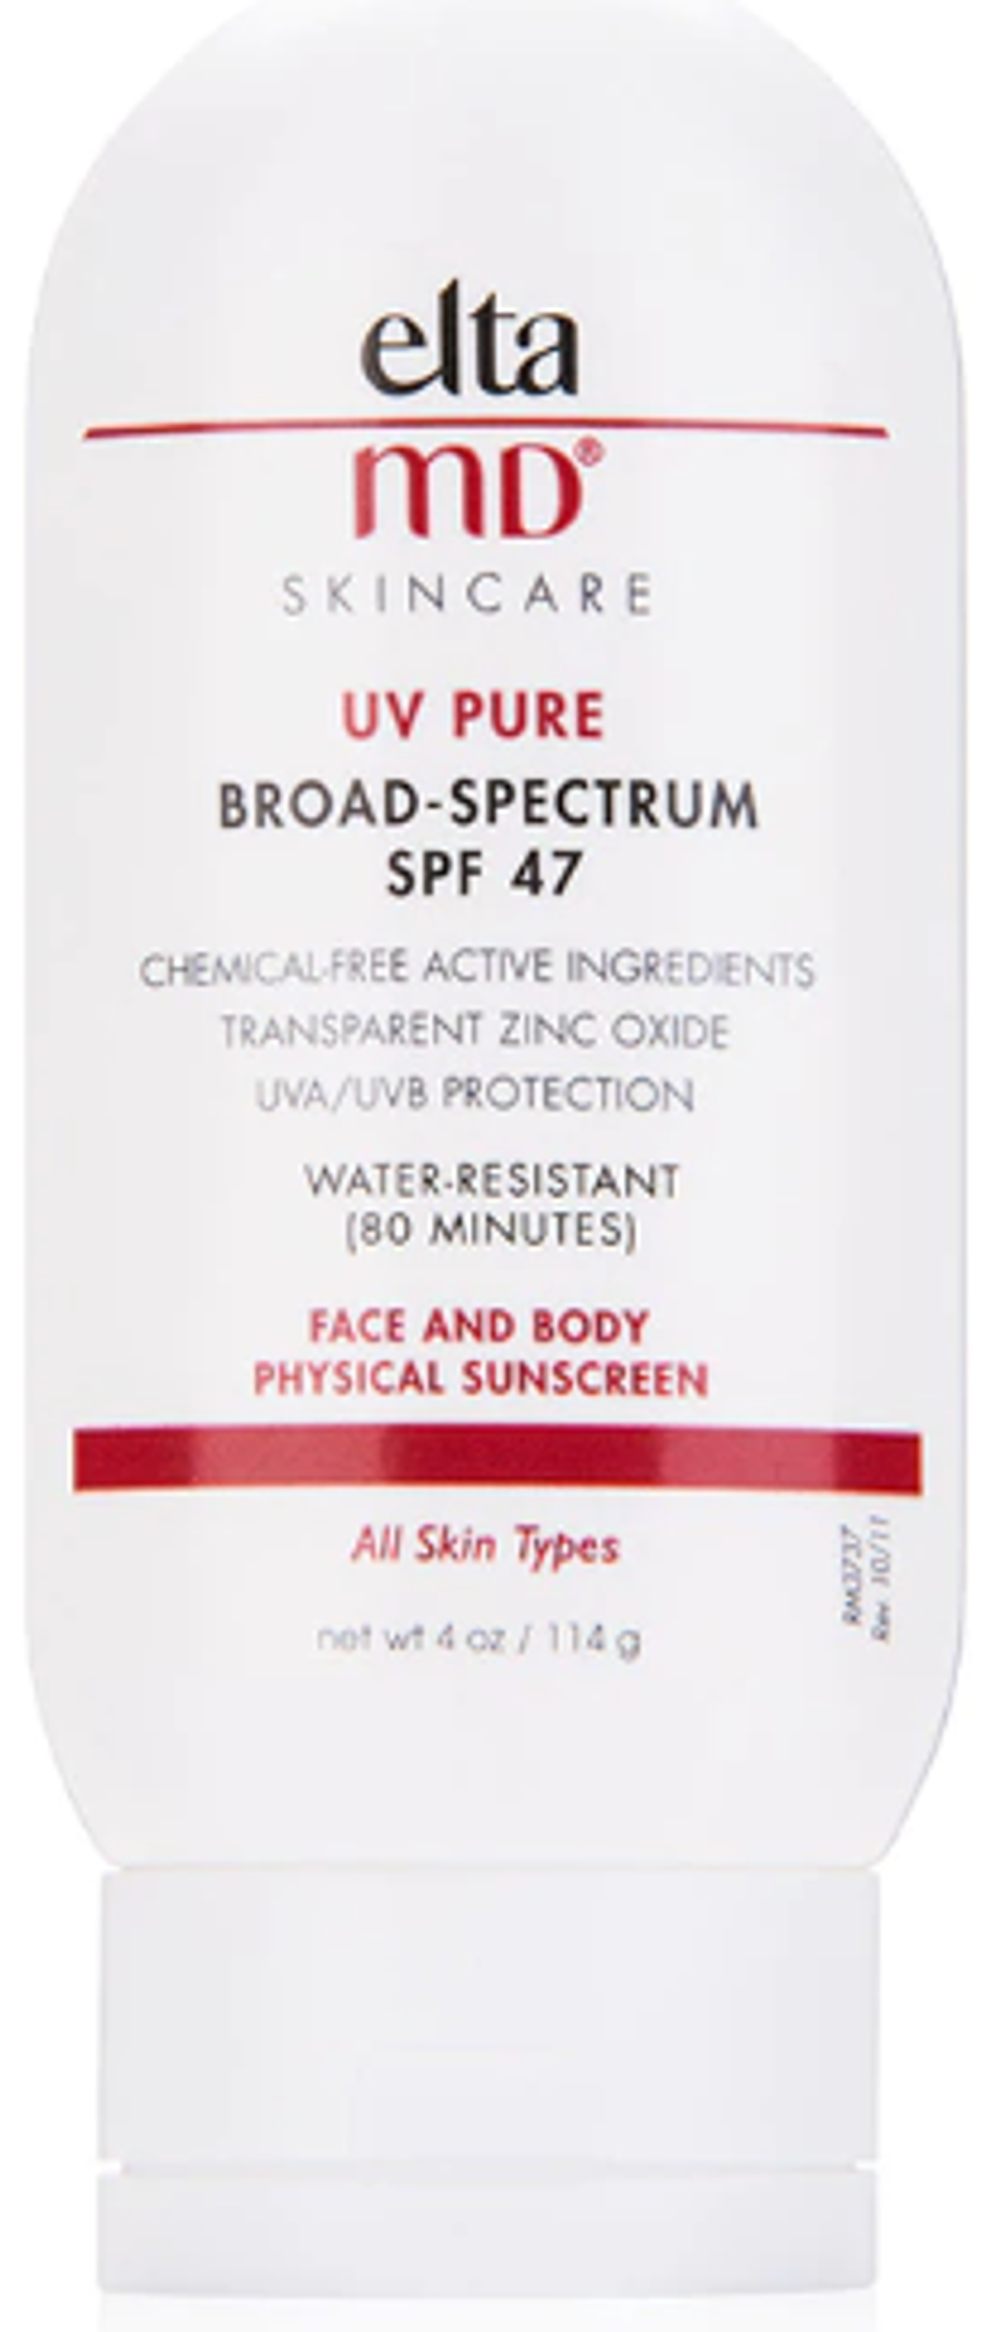 EltaMD UV Pure водостойкое солнцезащитное средство для лица и тела SPF47 114г